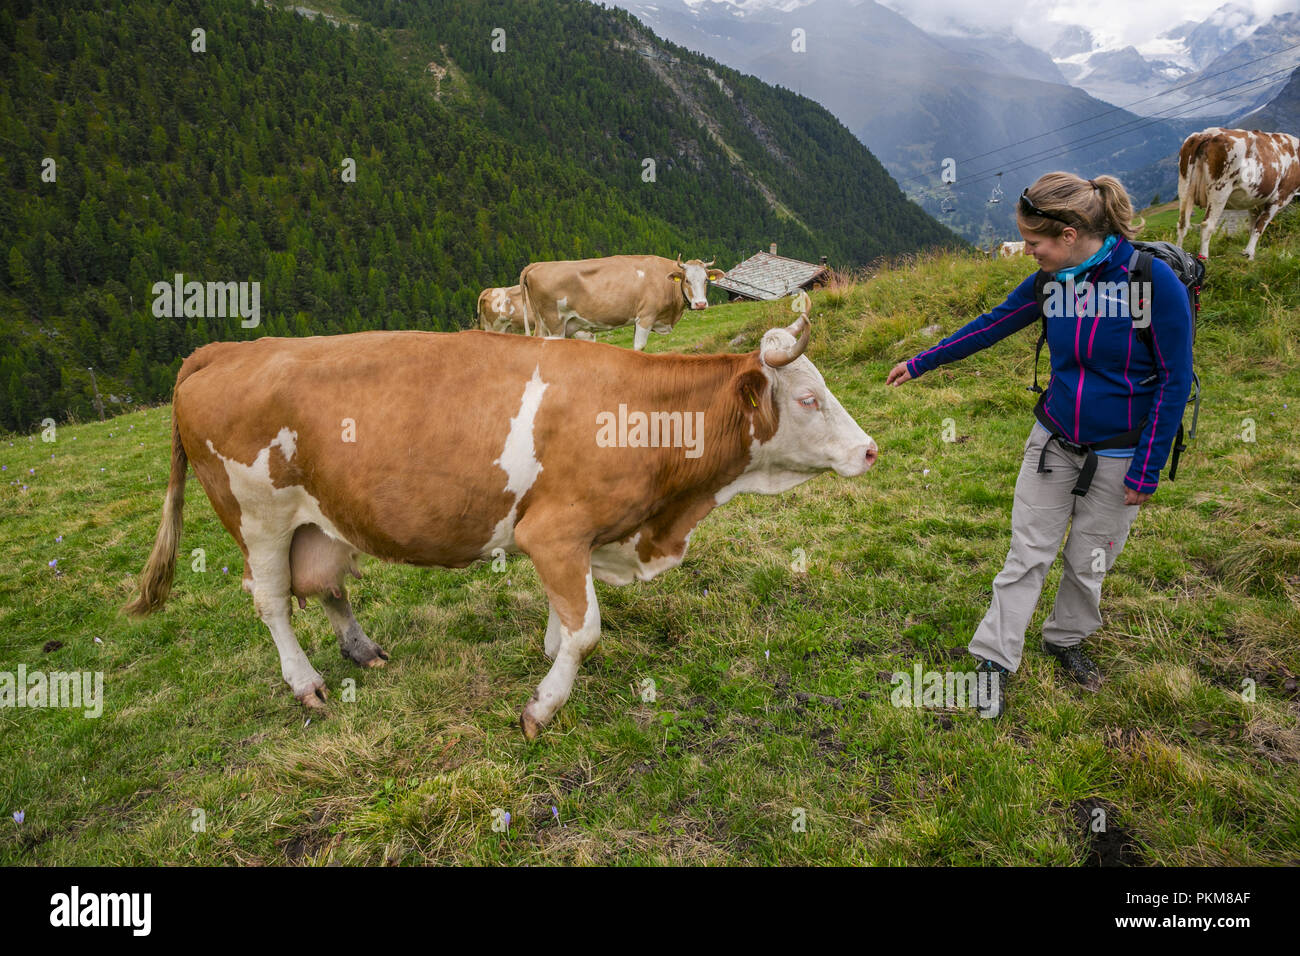 Rouge et blanc typiquement néerlandais vache à lait. Excursion à partir de lac Stellisee à Findeln. Zermatt. Alpes suisses. Valais. La Suisse. L'Europe. Banque D'Images